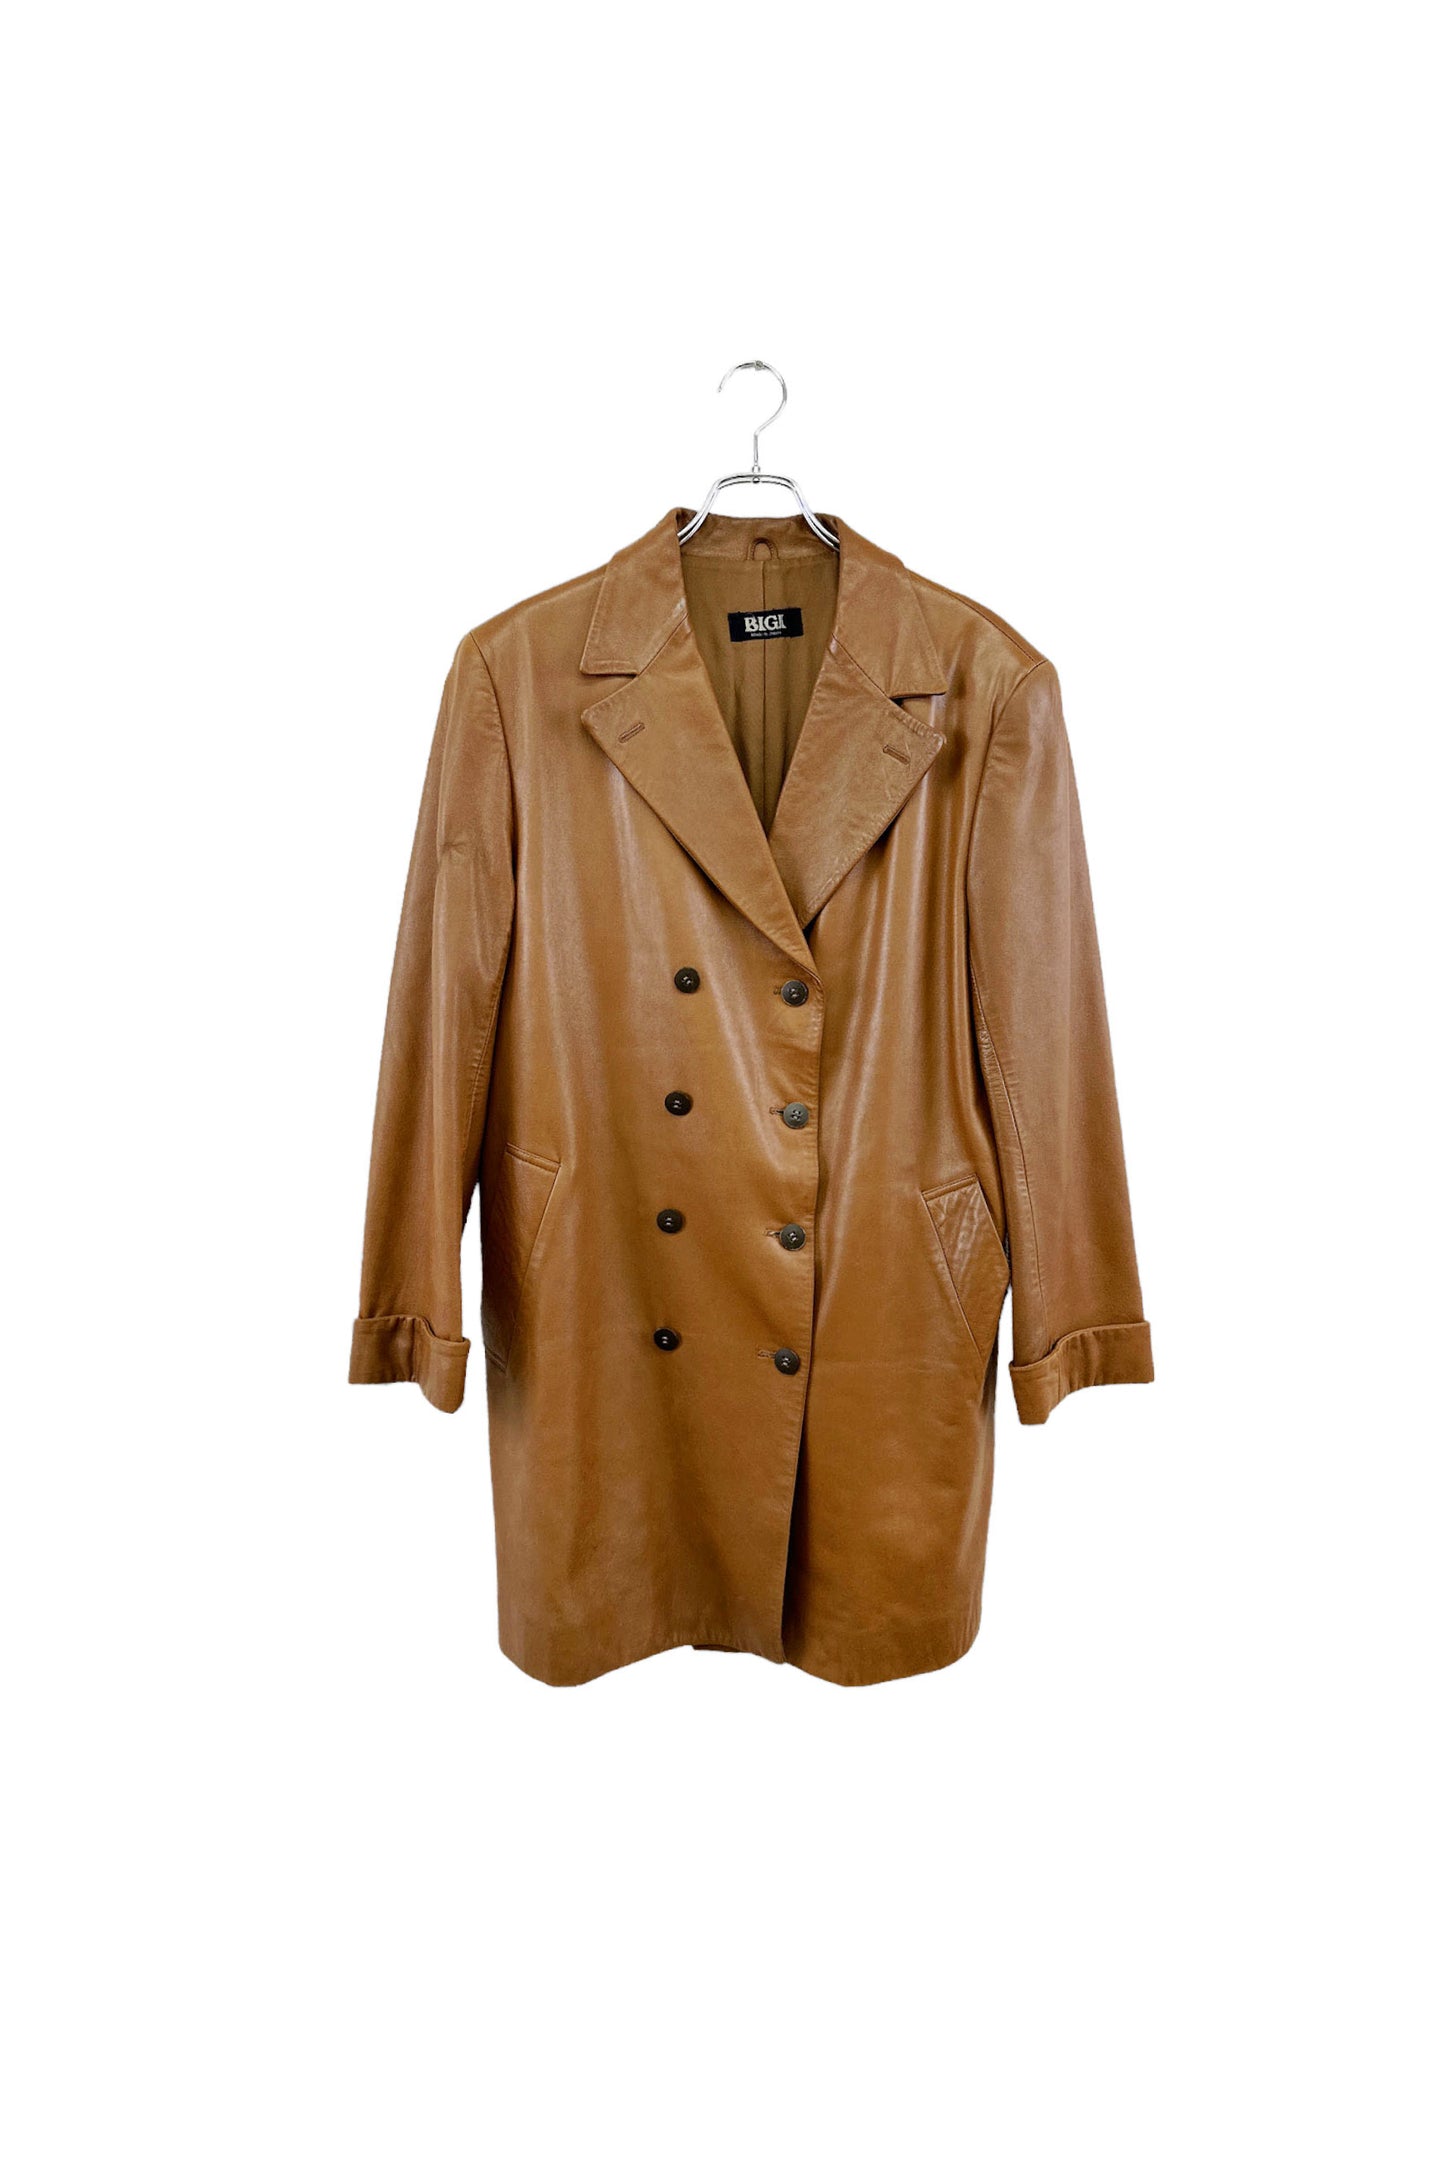 BIGI leather coat